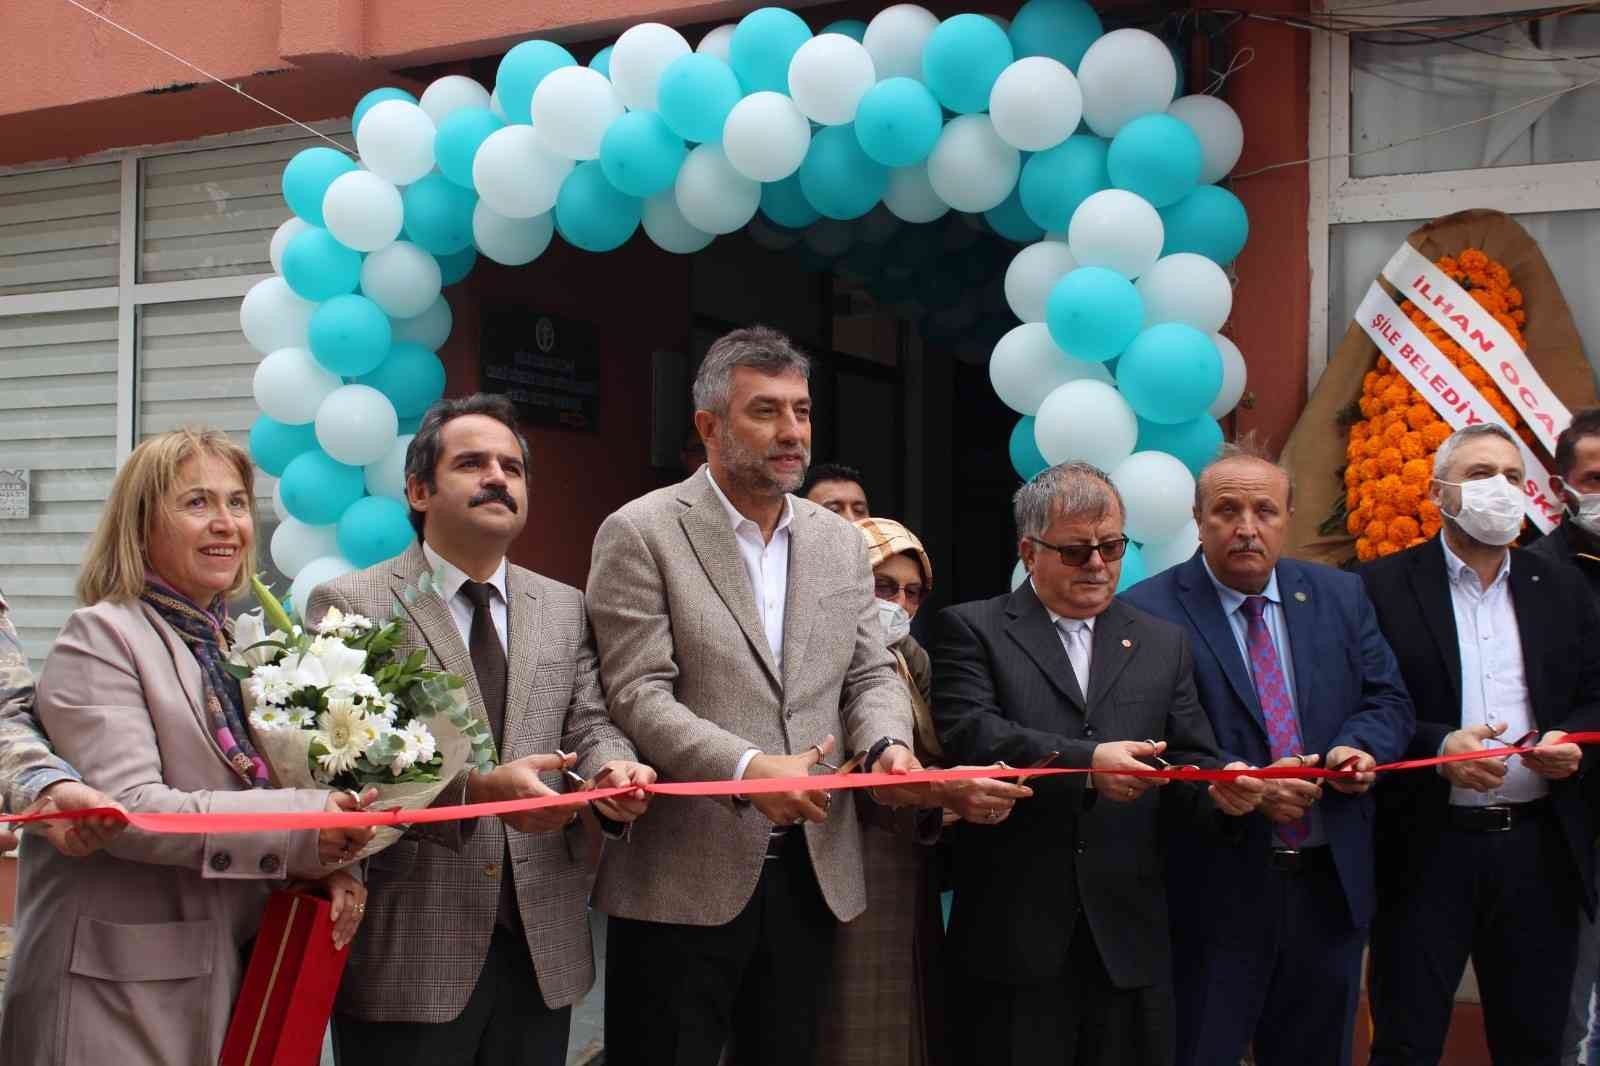 Şile’de Muhtarlar Günü’nde, ’Muhtarlar Derneği’ açıldı #istanbul